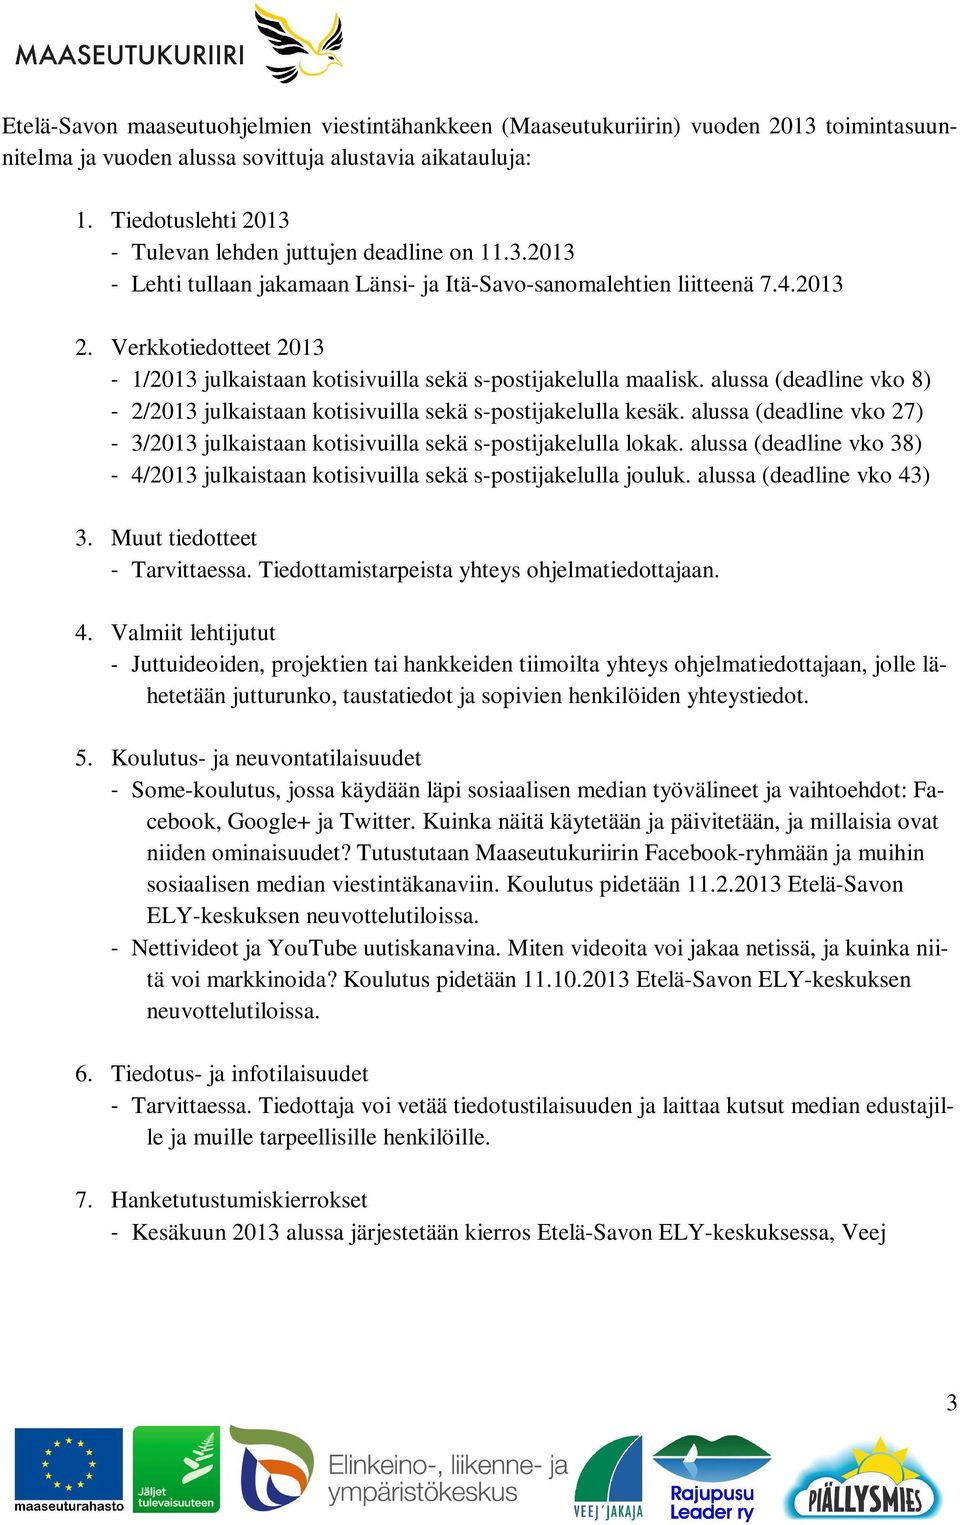 Verkkotiedotteet 2013-1/2013 julkaistaan kotisivuilla sekä s-postijakelulla maalisk. alussa (deadline vko 8) - 2/2013 julkaistaan kotisivuilla sekä s-postijakelulla kesäk.